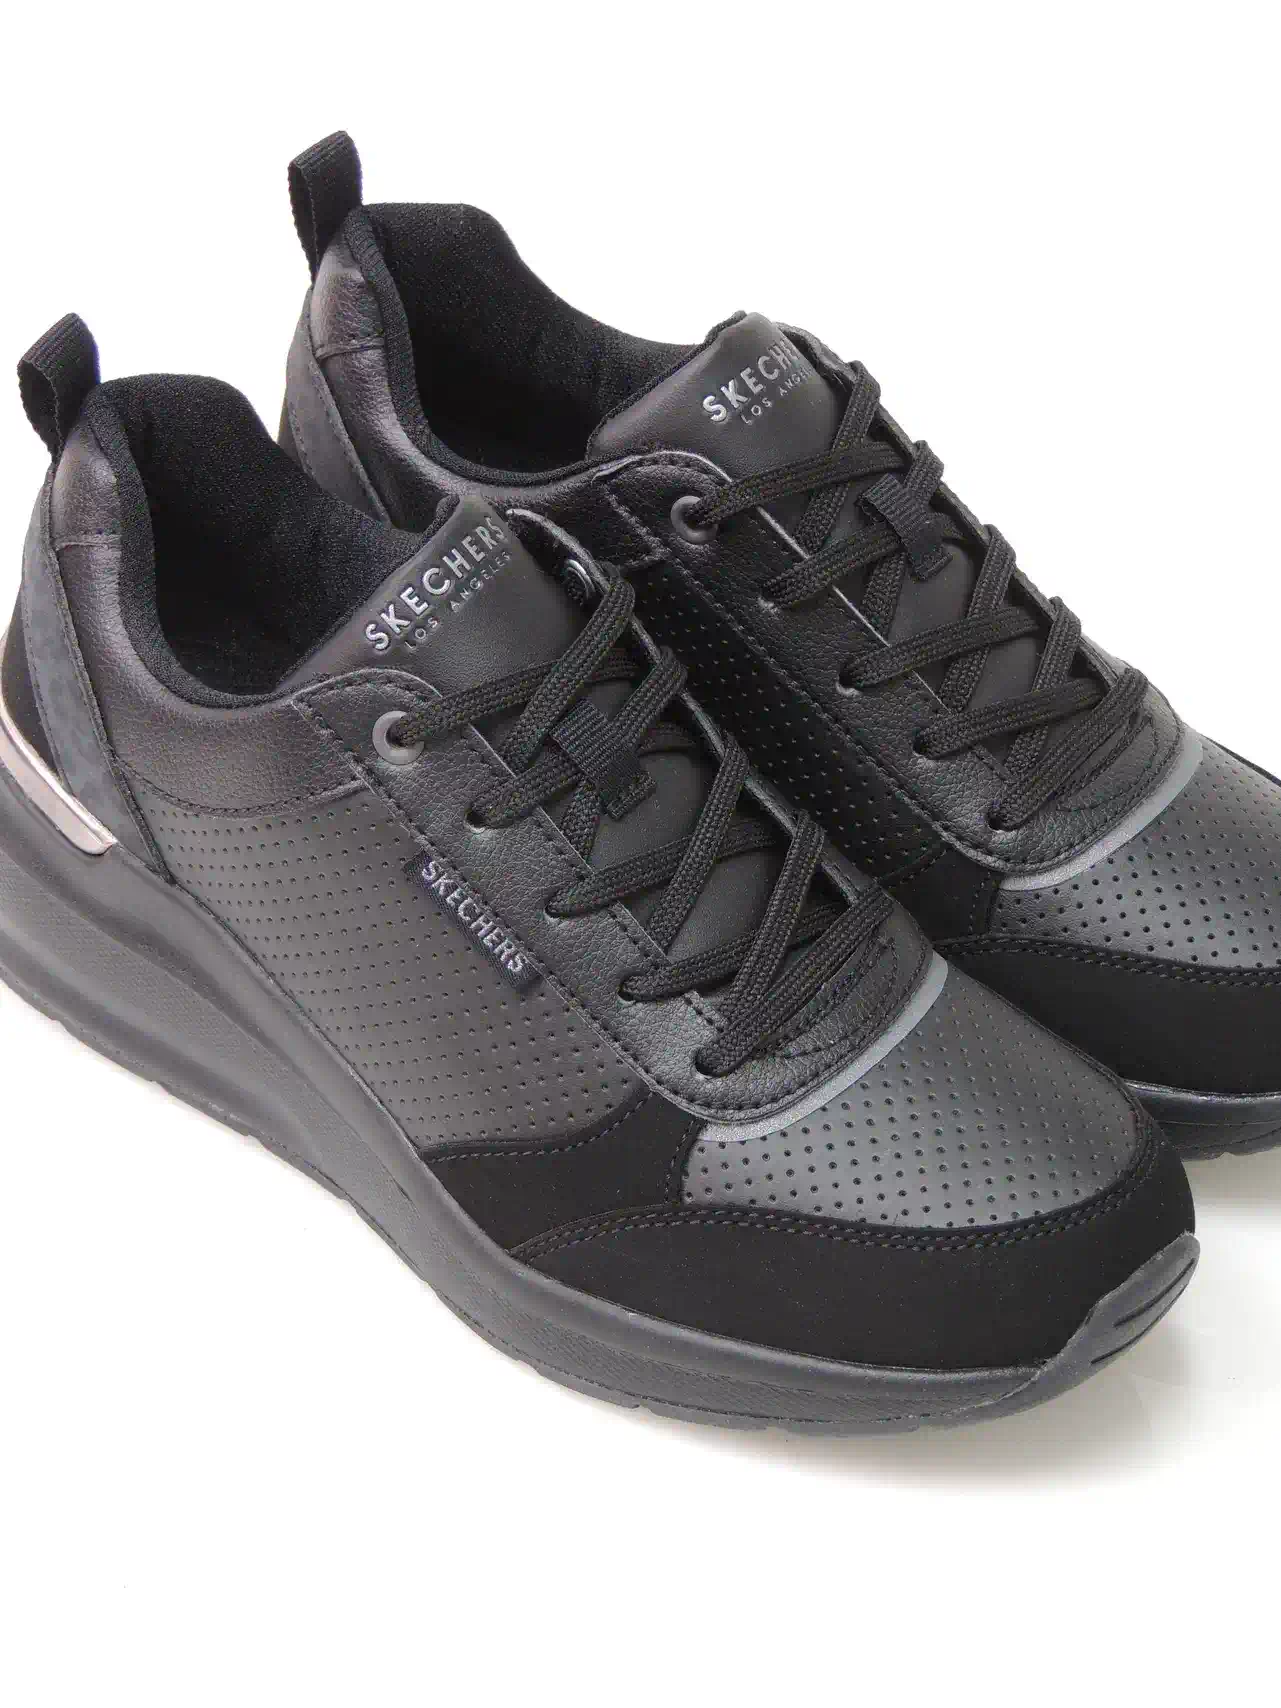 sneakers--skechers-155616-polipiel-negro